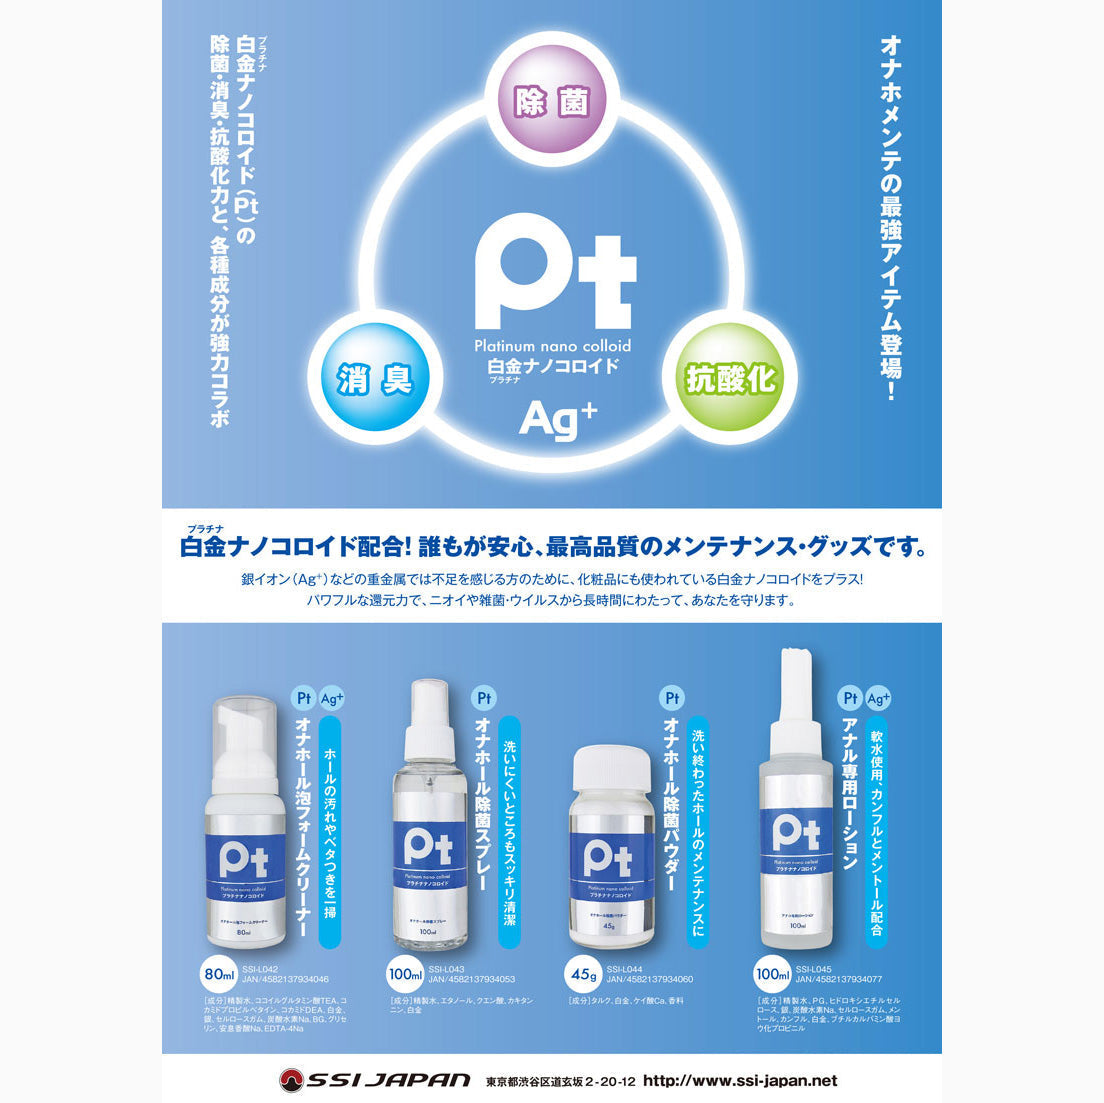 SSI JAPAN Pt 抗菌消臭抗酸化玩具清潔保養噴霧 100 毫升 情趣用品清潔及配件 購買